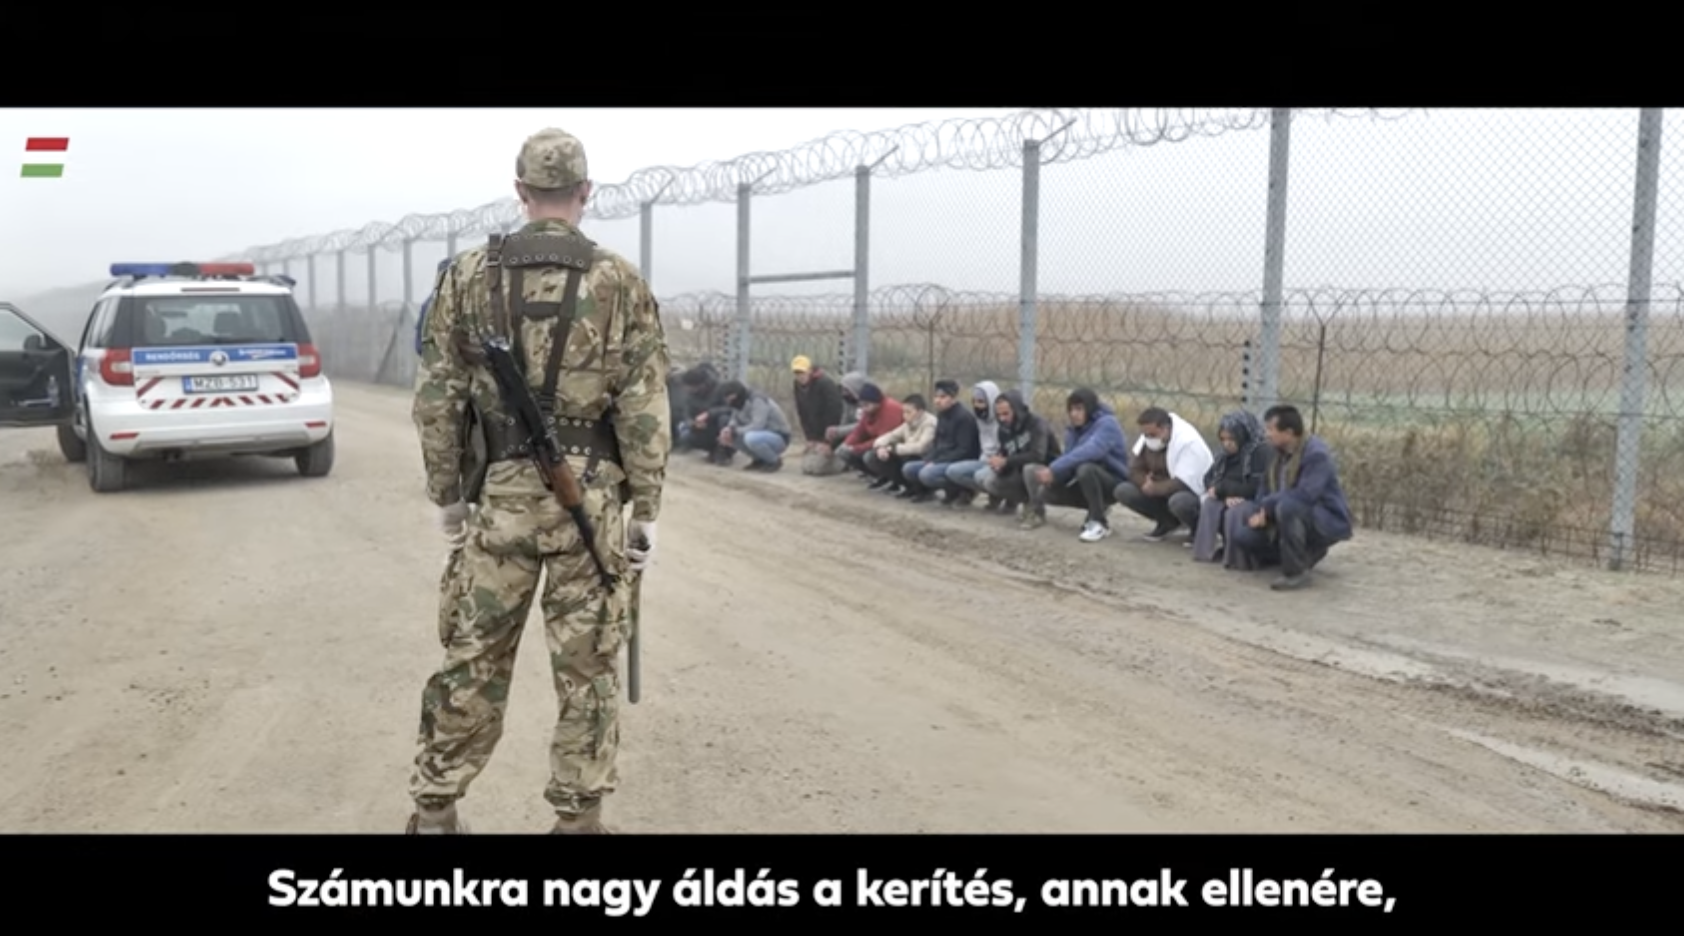 Ideje újra rettegni a migránsoktól - üzeni a legújabb kormányzati videóklip